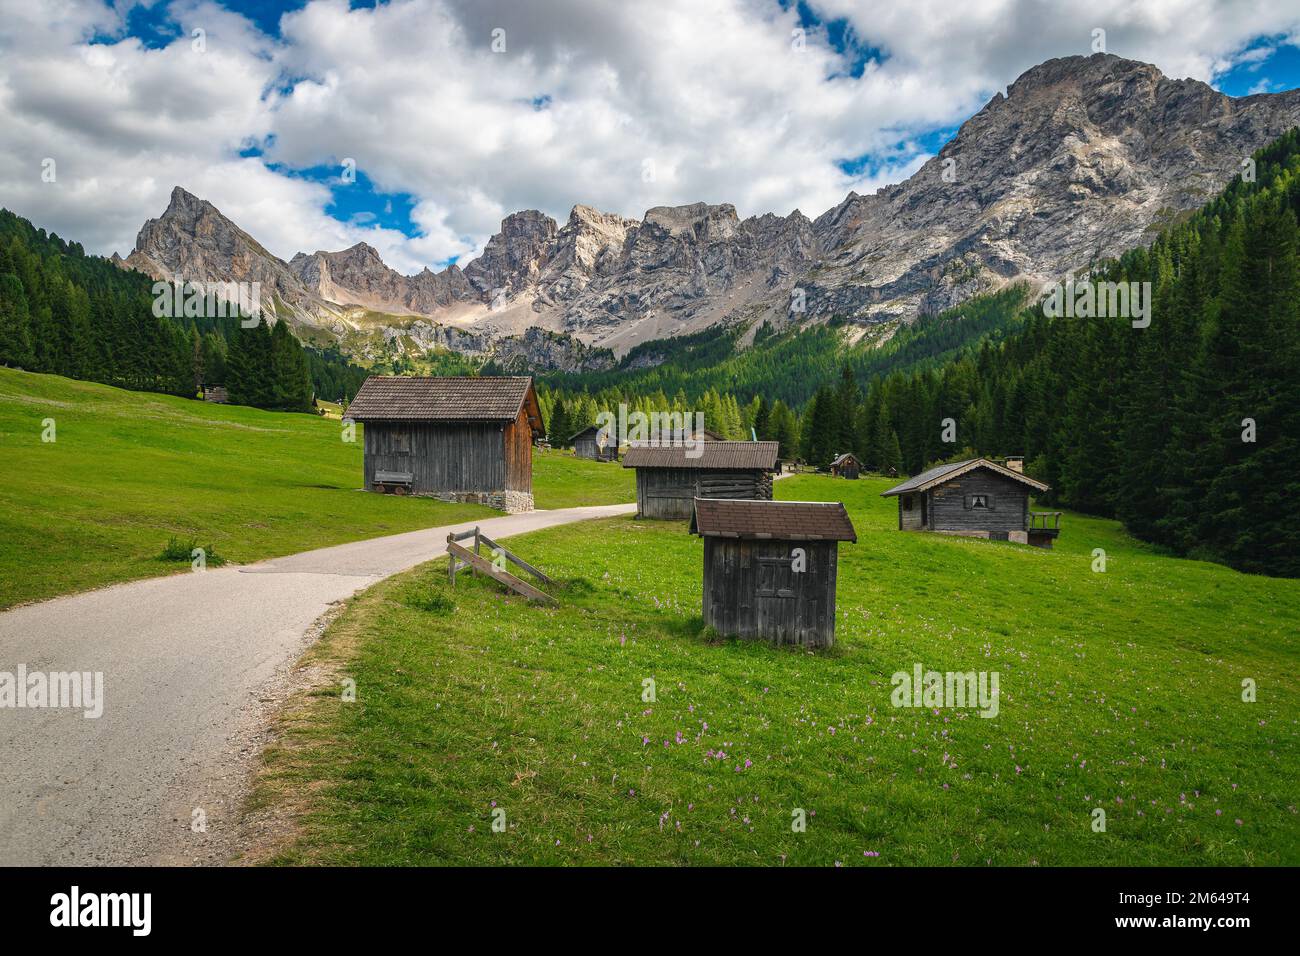 Vallée alpine de San Nicolo avec des huttes en bois sur les champs verdoyants pittoresques et de hautes montagnes en arrière-plan, Dolomites, Italie, Europe Banque D'Images